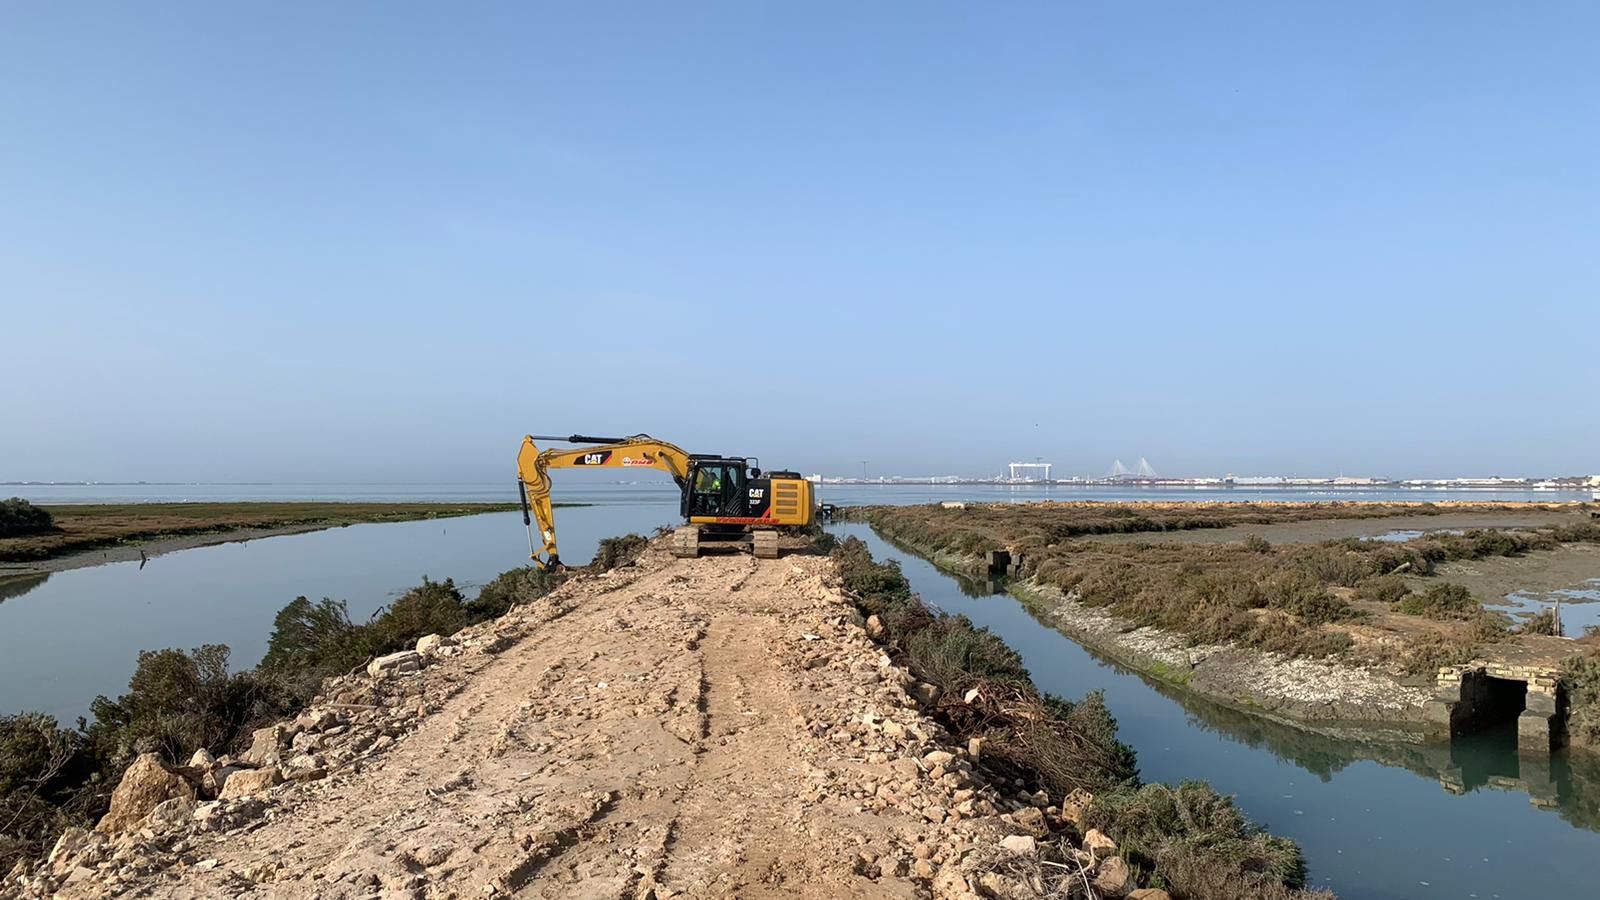 Acciones de restauración ambiental, el nuevo proyecto para restaurar una de las salinas más emblemáticas abandonada en la Bahía de Cádiz.